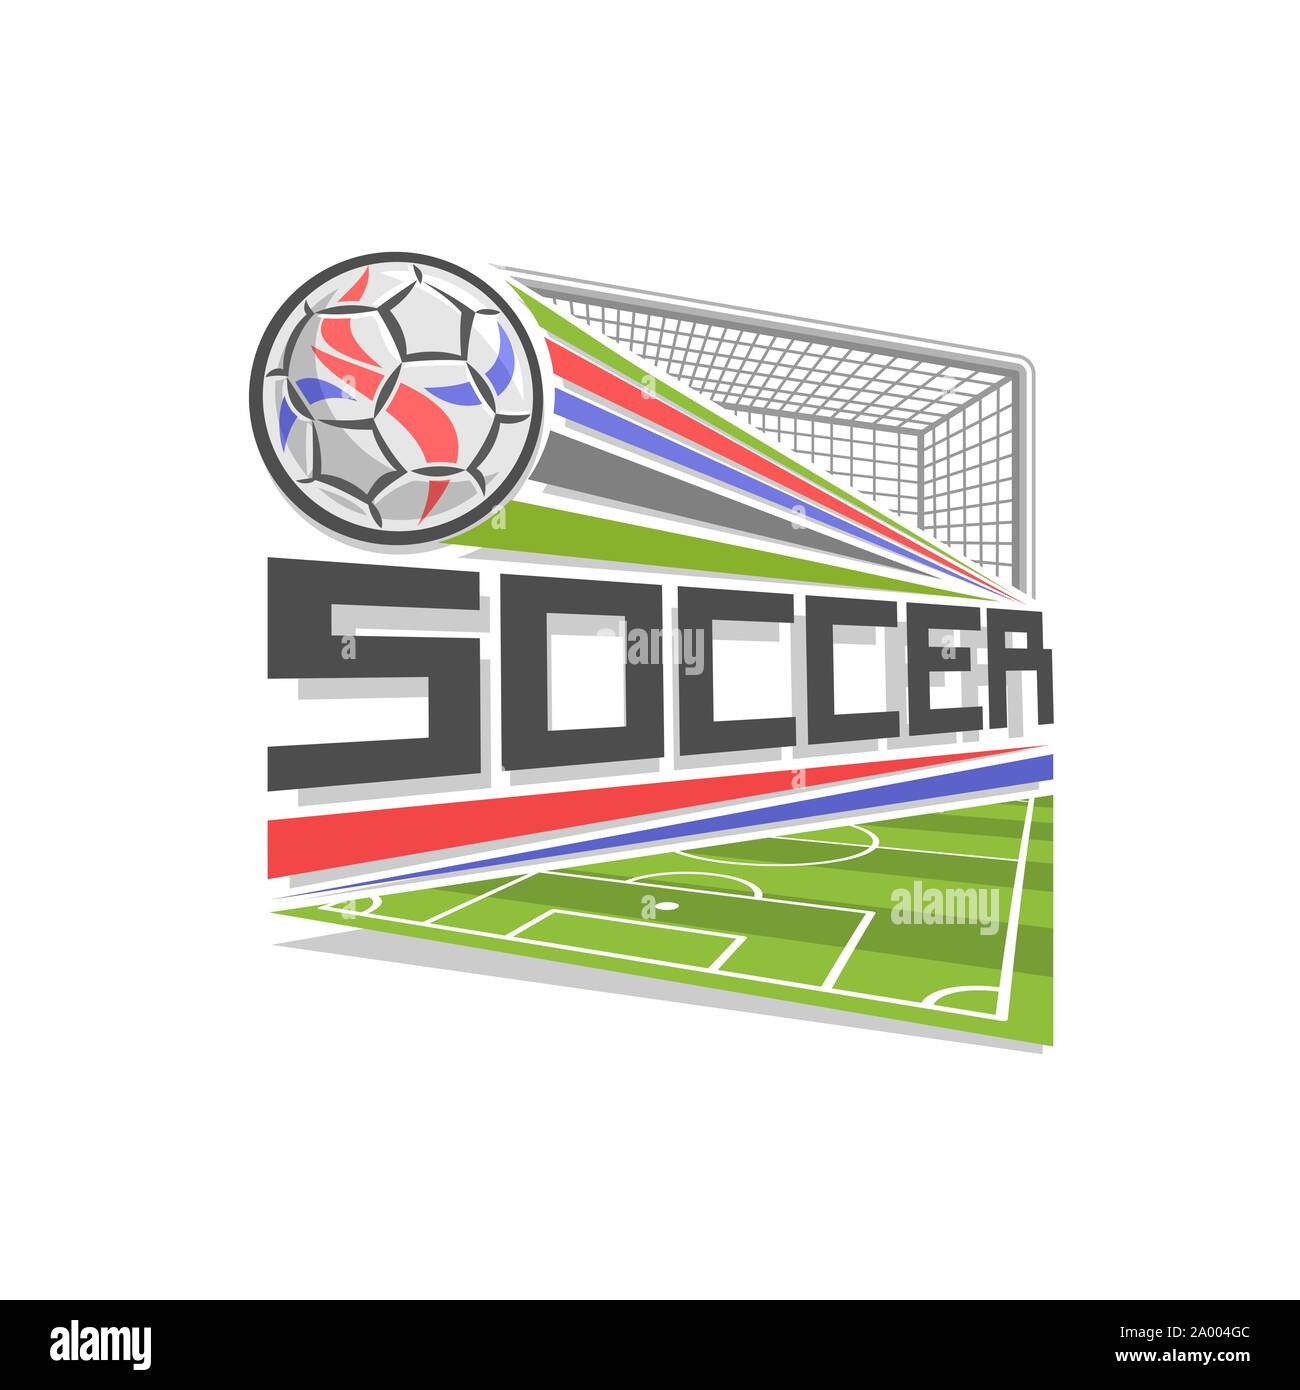 Vektor logo für Fußball-Spiel, Symbol in Form eines Rhombus für Fußball  Club, fliegenden Ball oben Sportplatz im Tor Tor mit Netz, moderne Zeichen  mit Fußball Stock-Vektorgrafik - Alamy